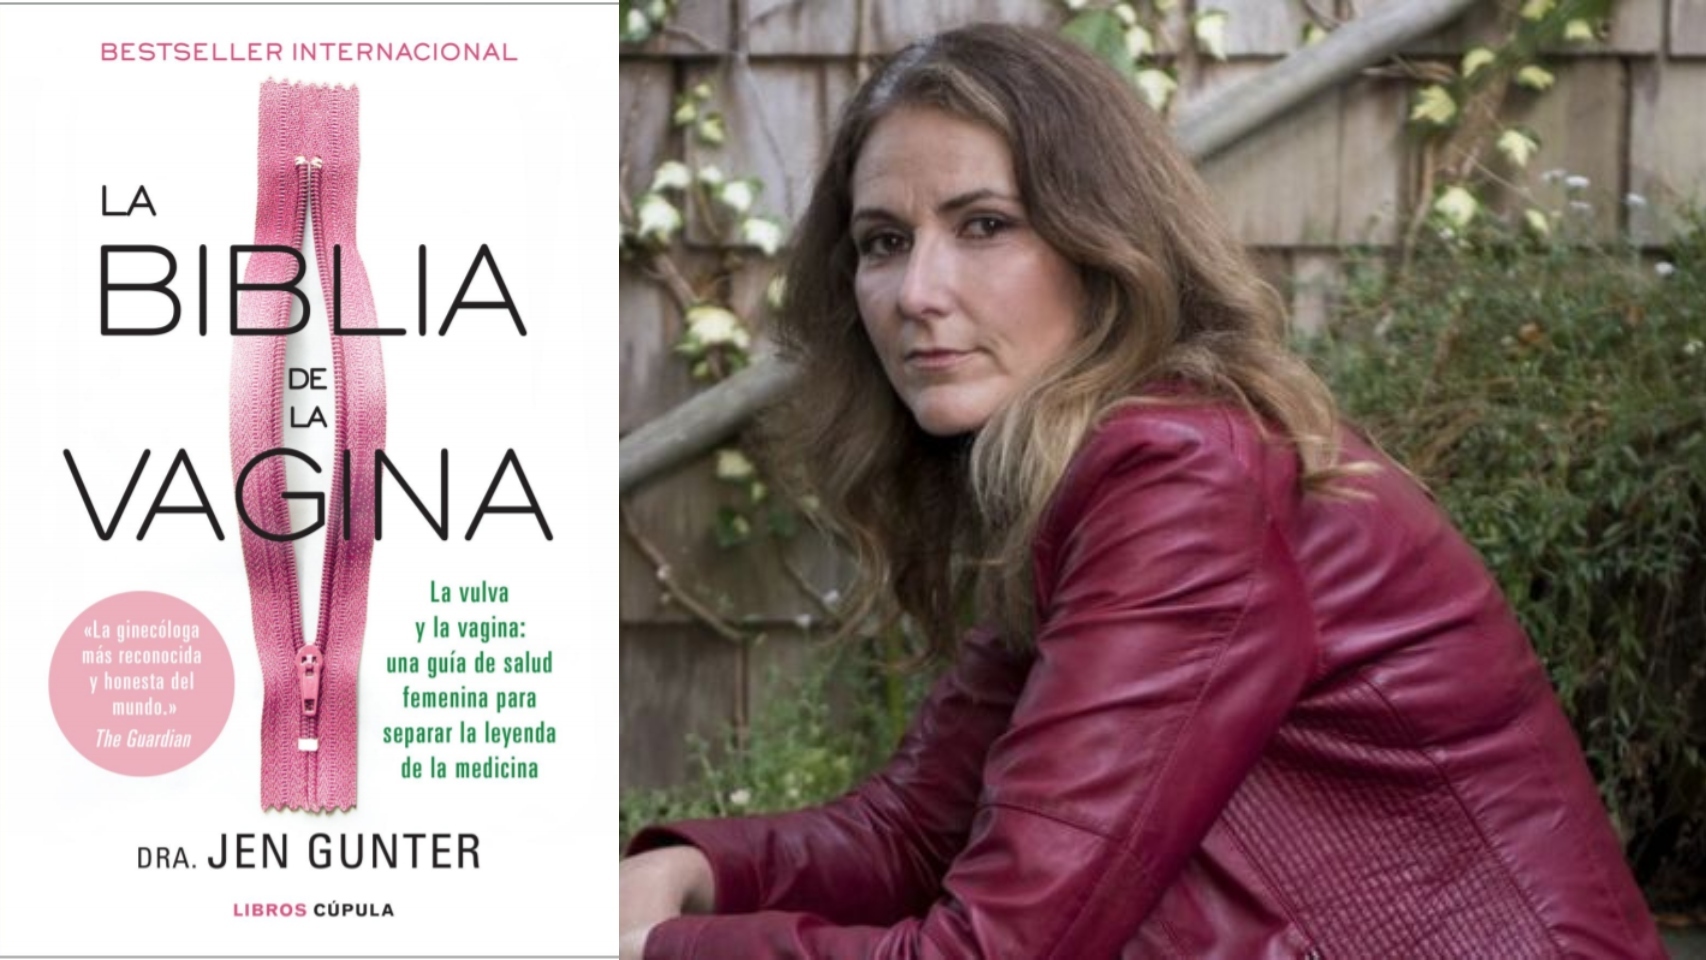 El best seller internacional 'La biblia de la vagina' de Jen Gunter (derecha) llega a España.